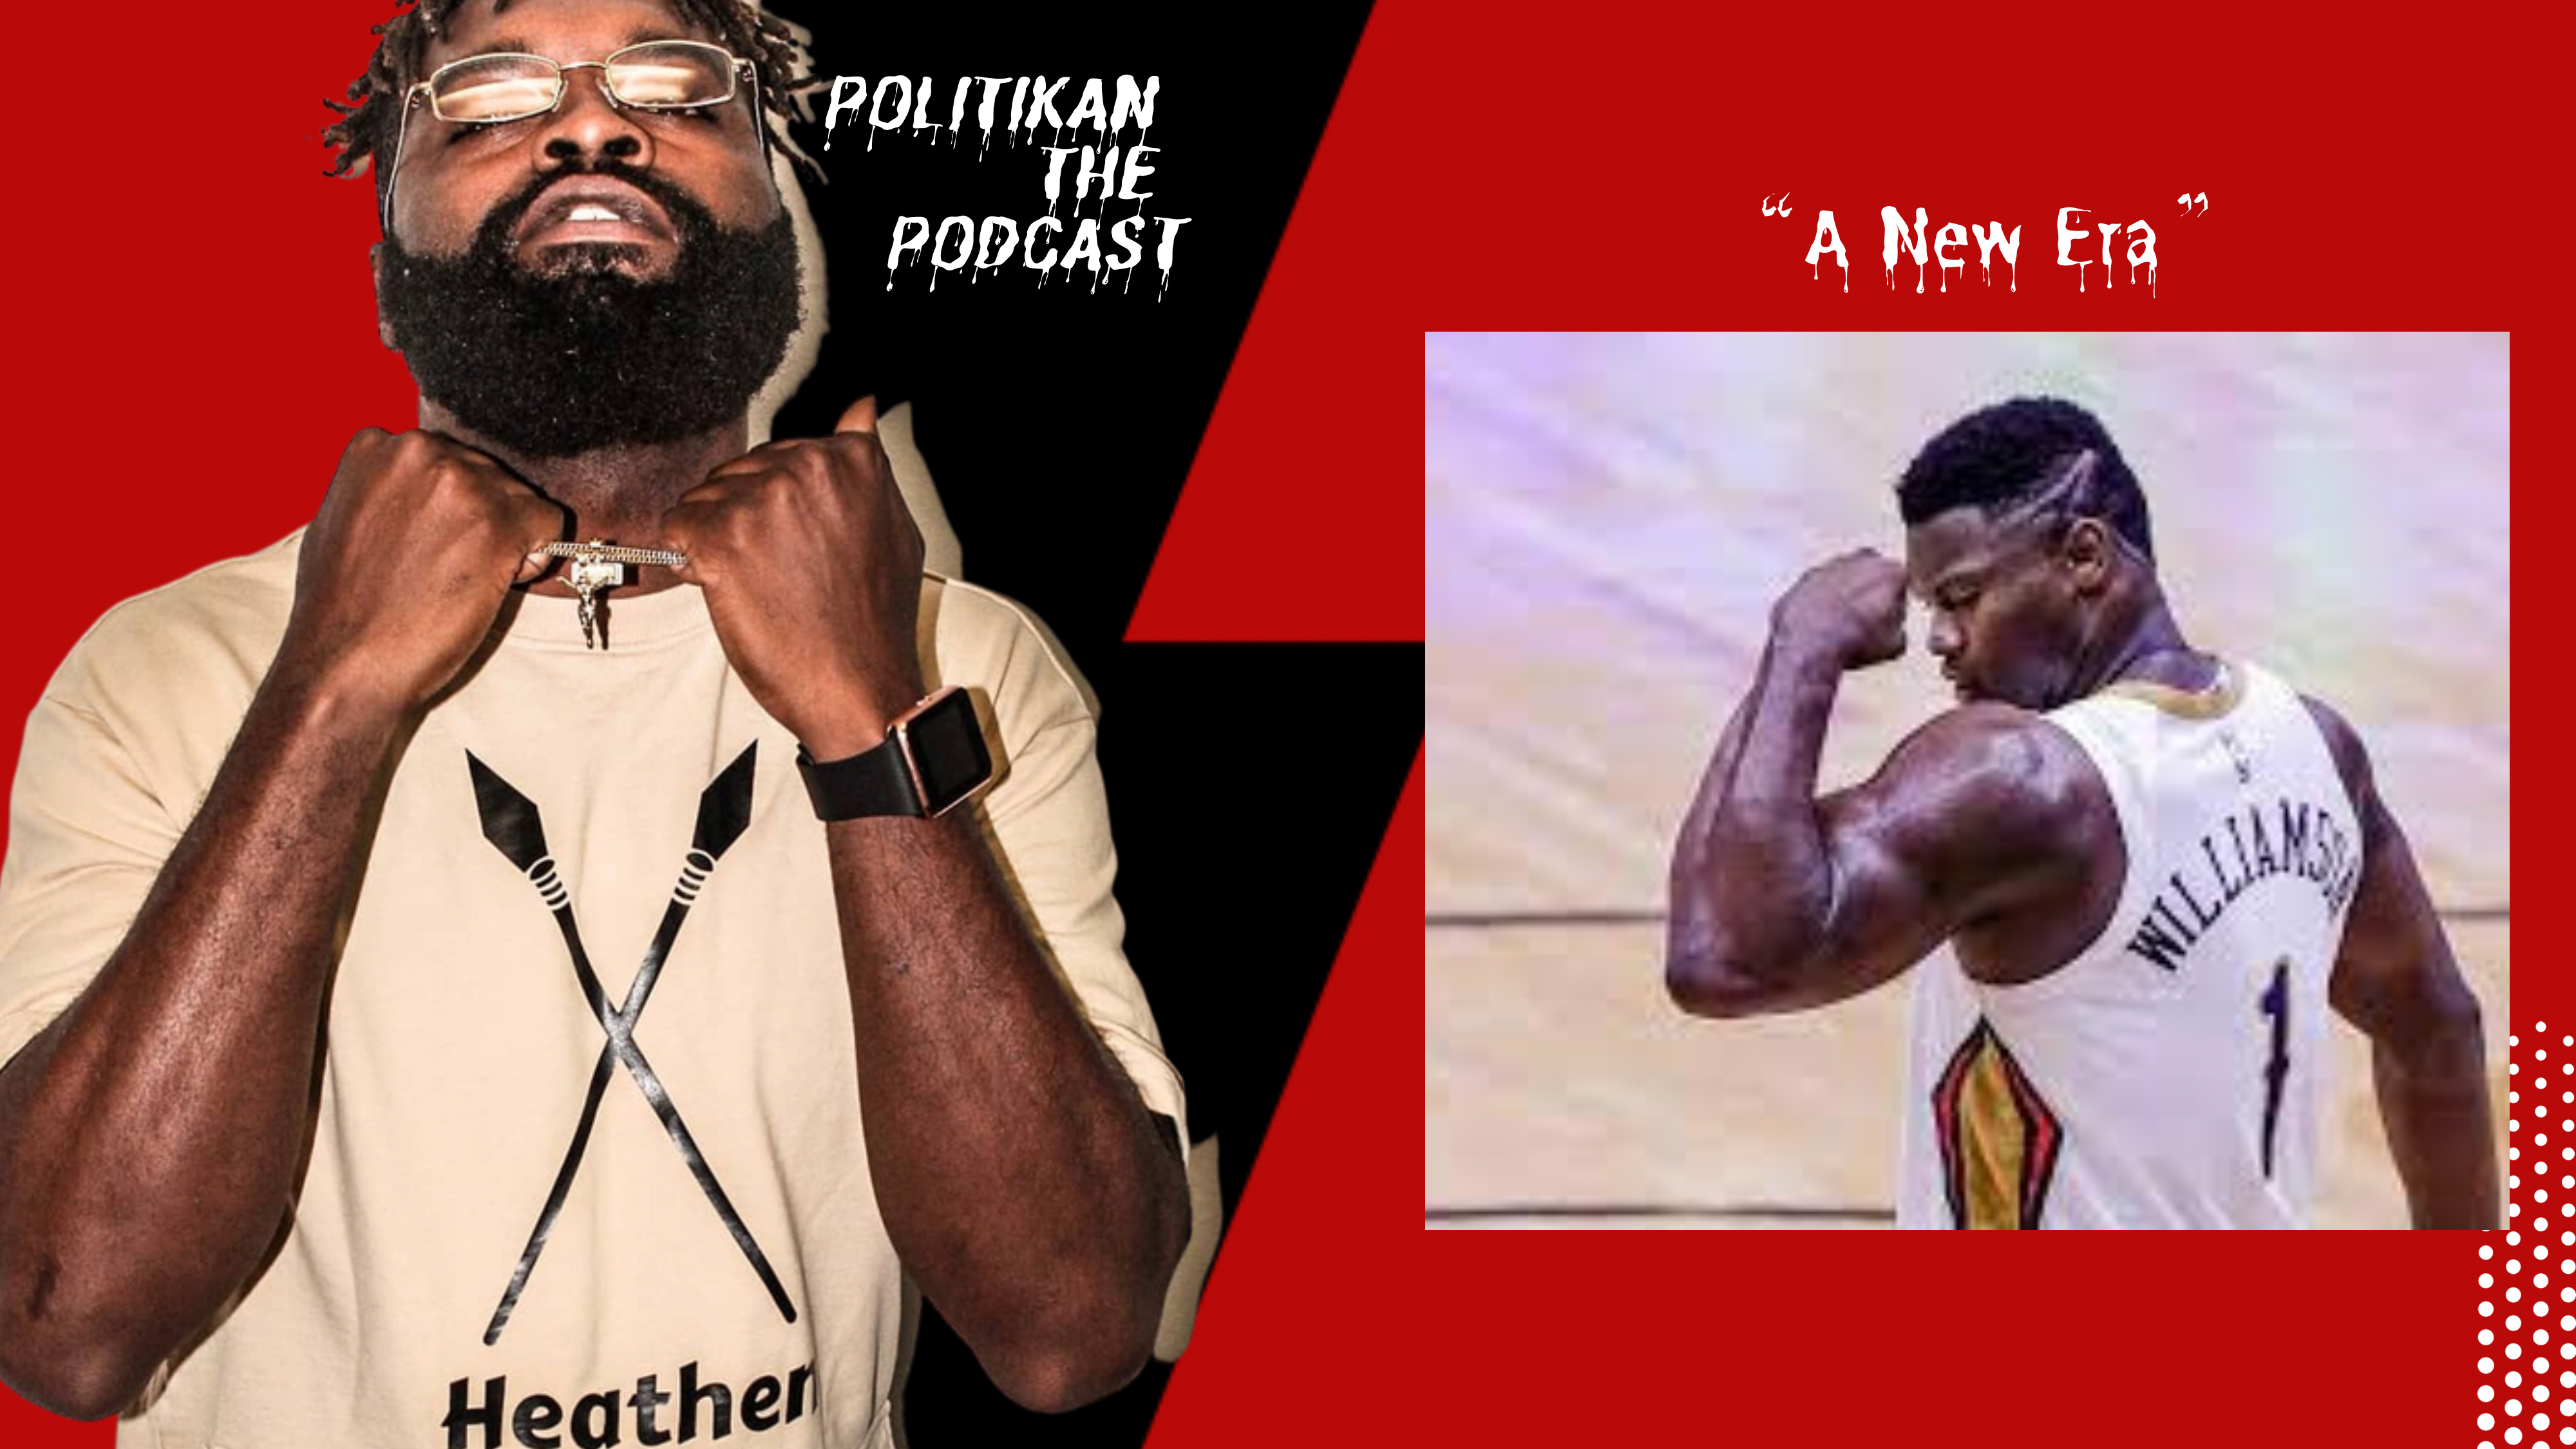 PolitiKan The Podcast “A New Era”